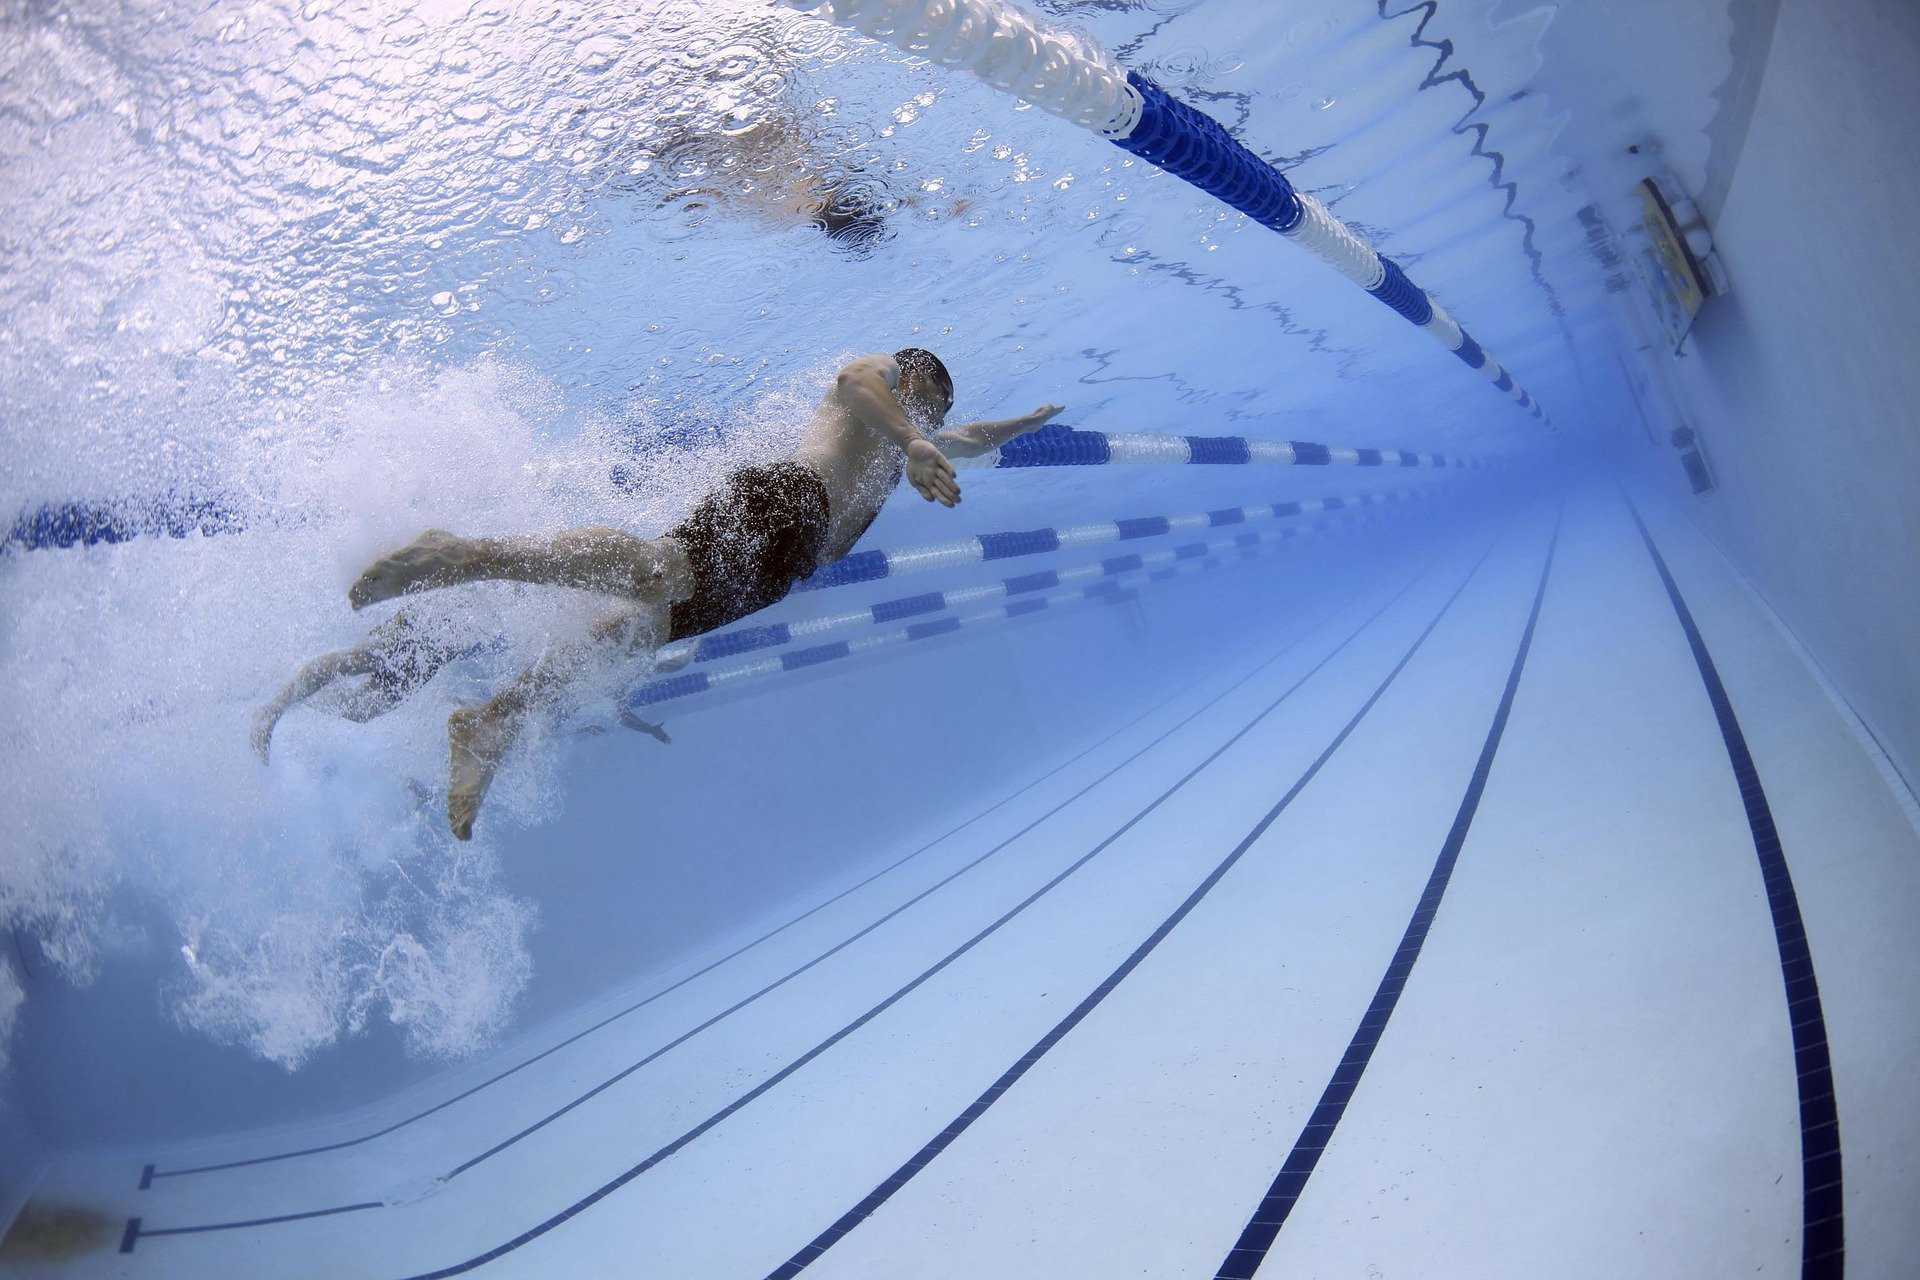 CEU Ottawa-Uirapuru oferece aulas de natação para crianças e